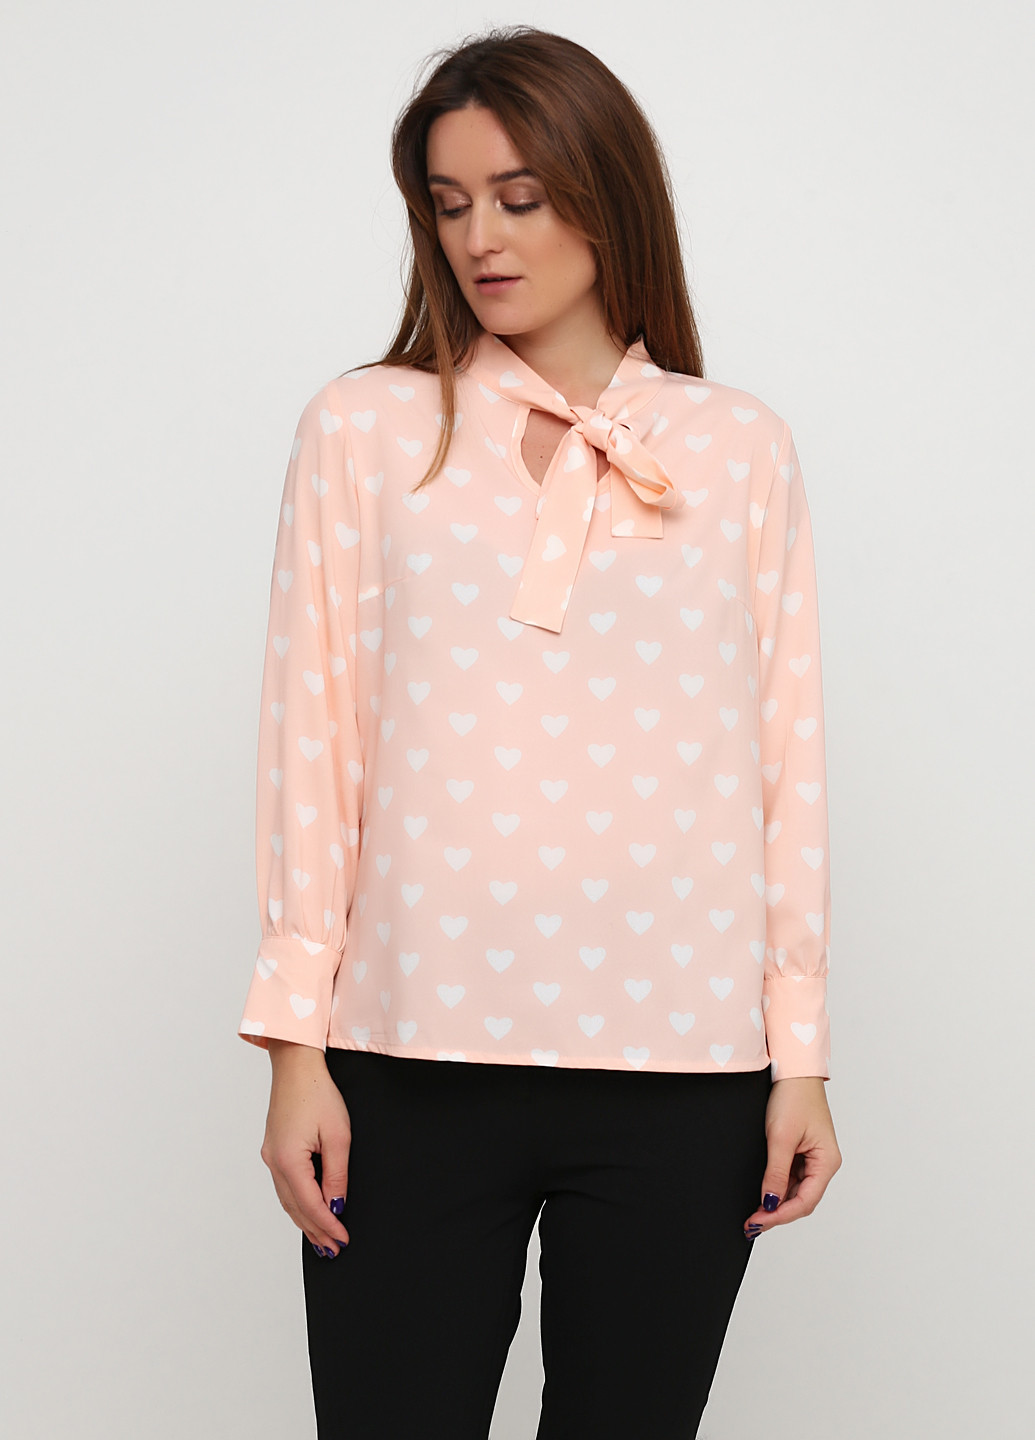 Персиковая демисезонная блуза Алеся